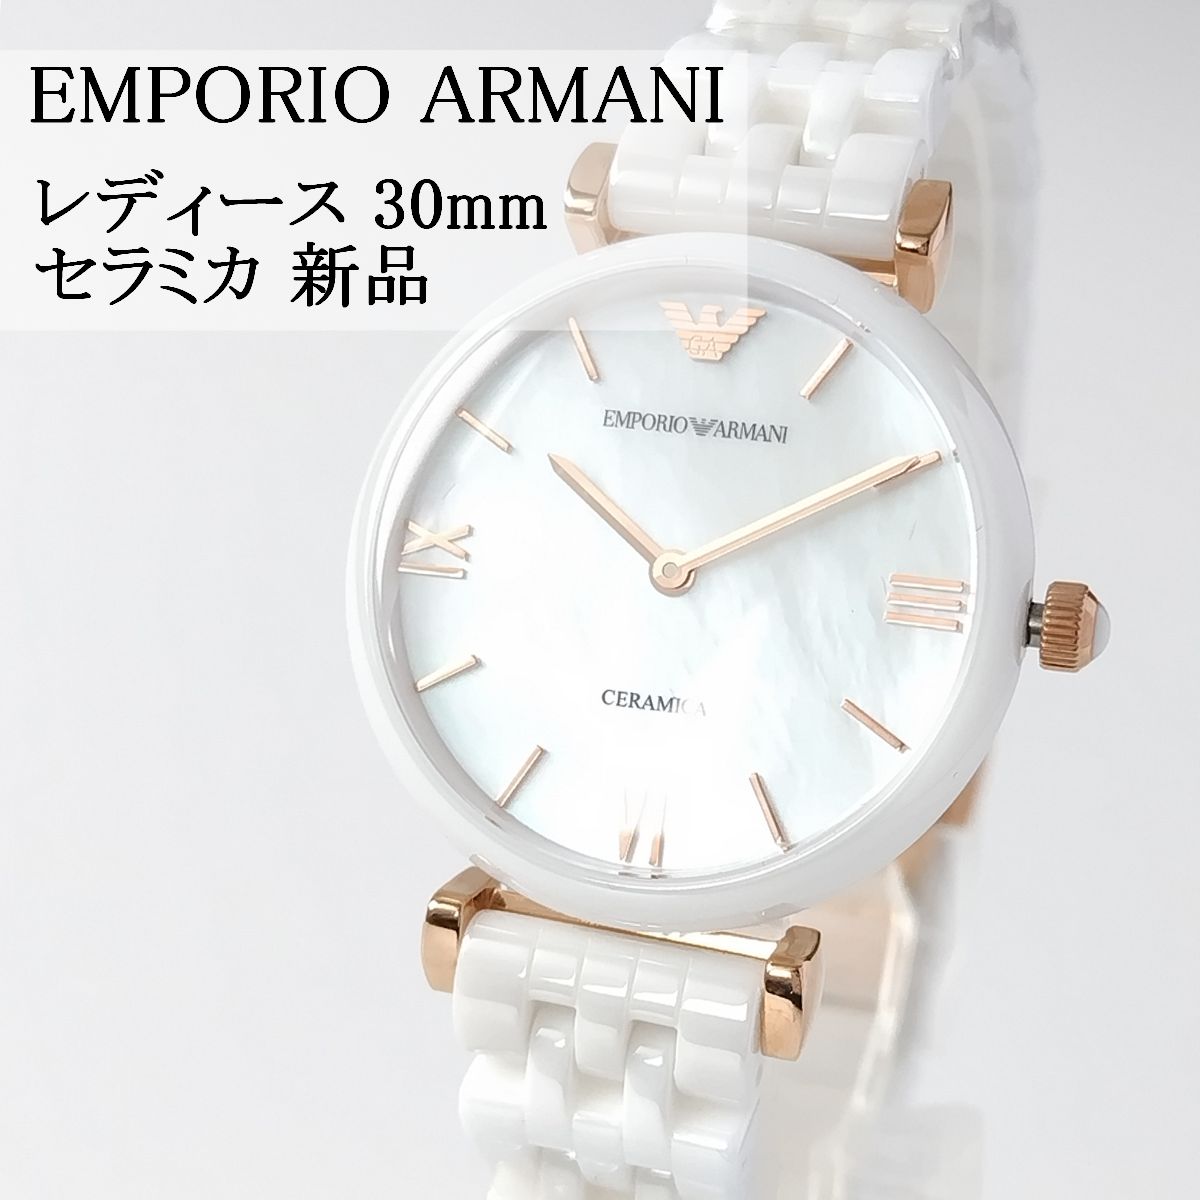 ホワイトセラミック新品レディース腕時計エンポリオ・アルマーニ30mm白小さめ2針約175cm文字盤色 - 腕時計